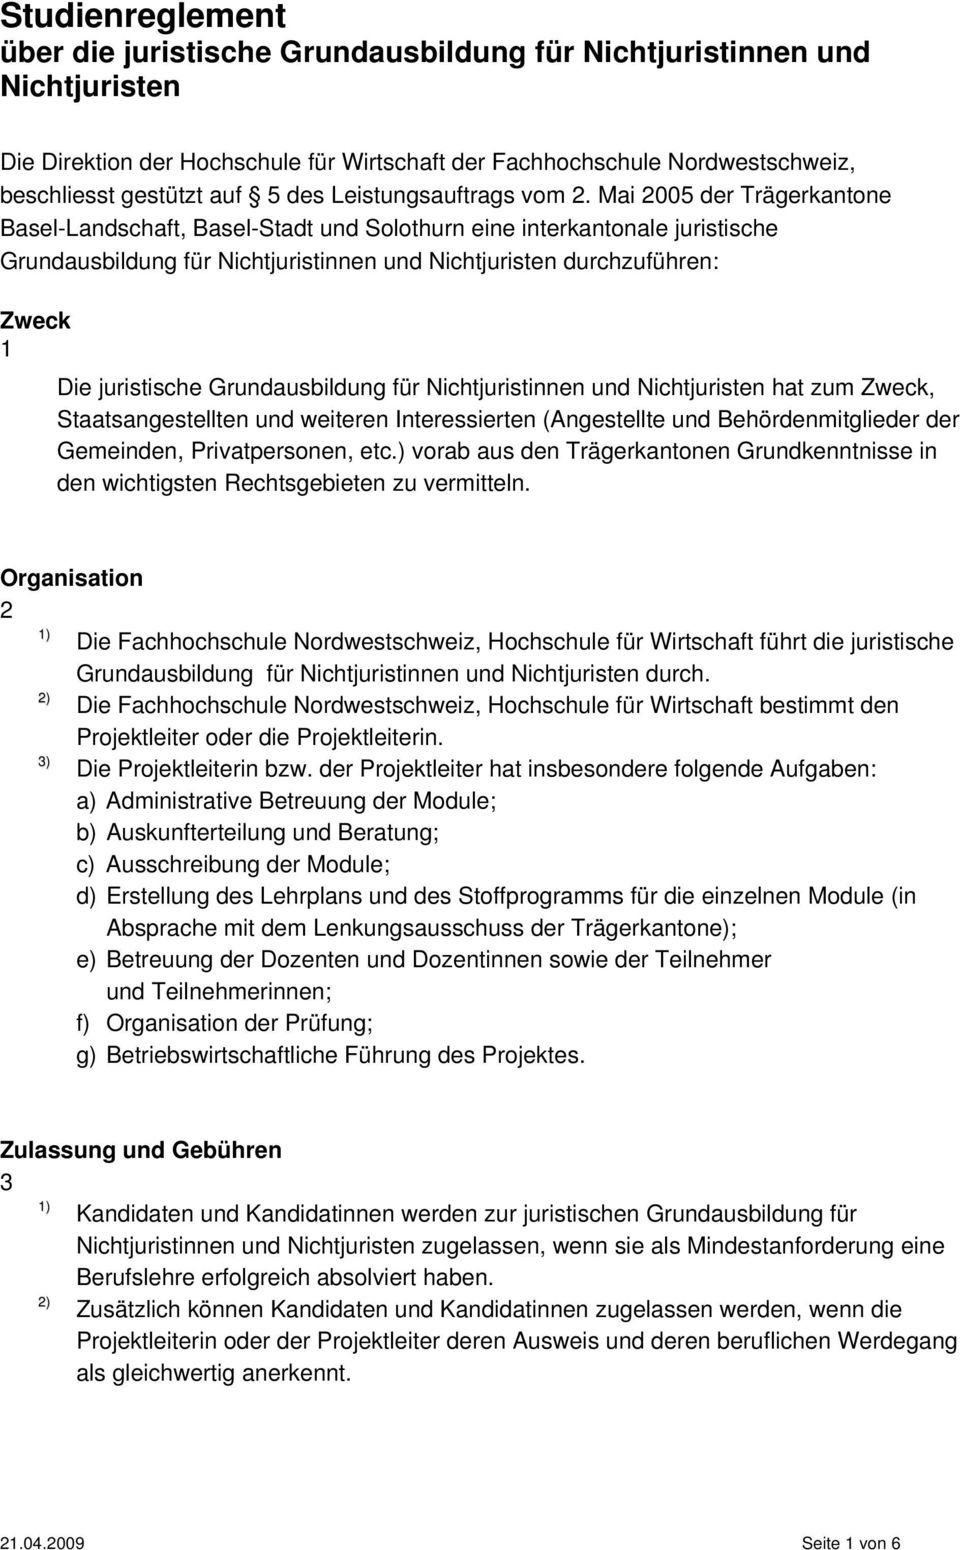 Mai 2005 der Trägerkantone Basel-Landschaft, Basel-Stadt und Solothurn eine interkantonale juristische Grundausbildung für Nichtjuristinnen und Nichtjuristen durchzuführen: Zweck 1 Die juristische